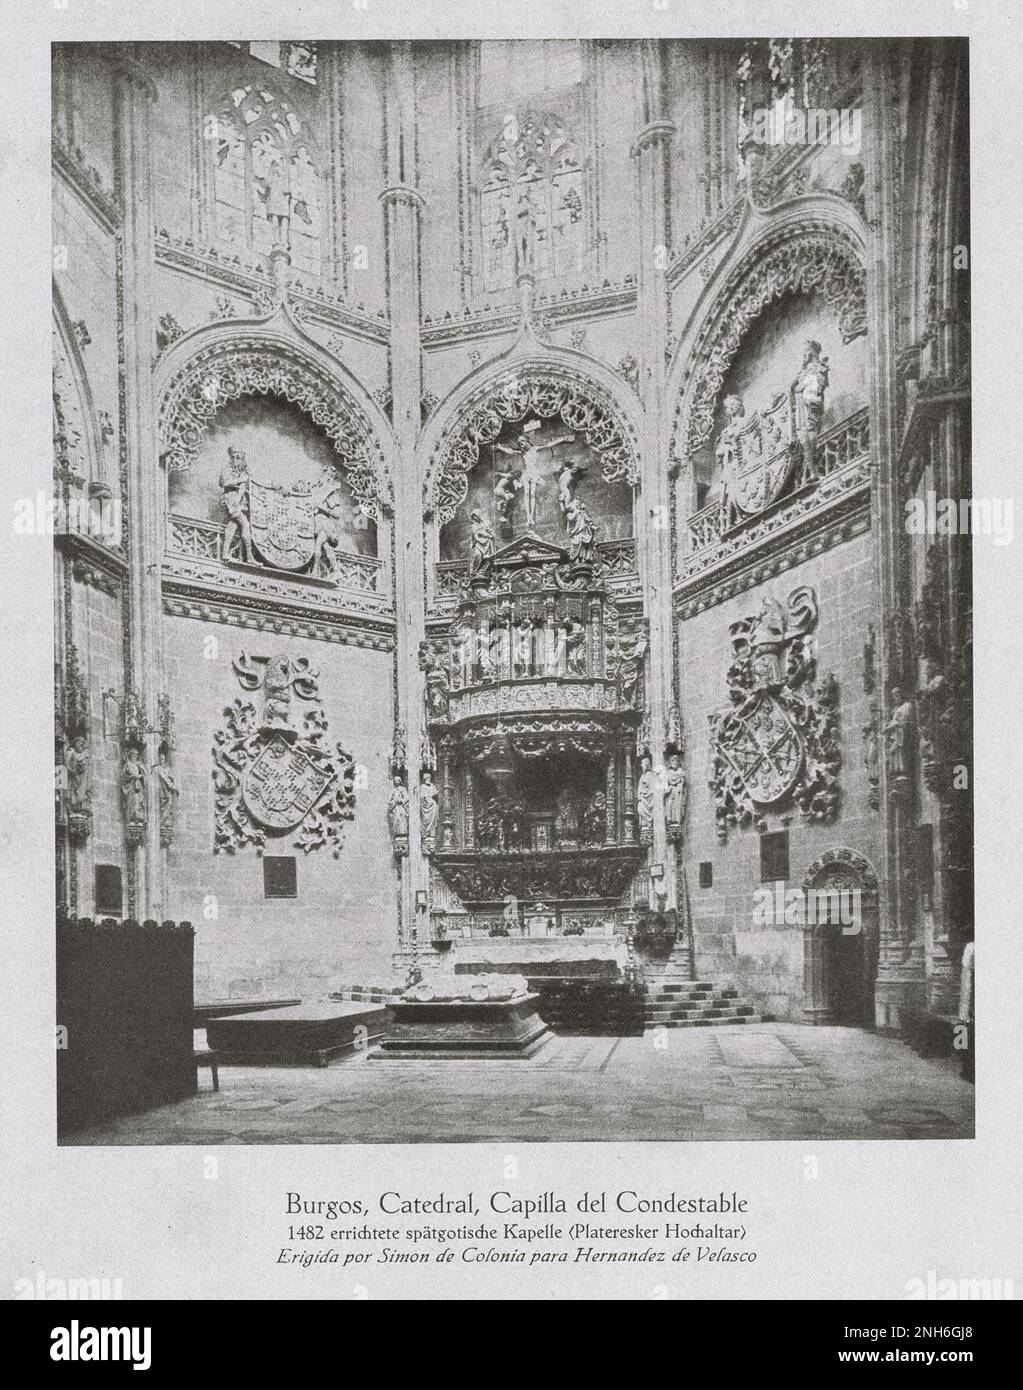 Architektur des alten Spaniens. Oldtimer-Foto der Kathedrale von Burgos (Capilla del Condestable catedral de Burgos). Stockfoto